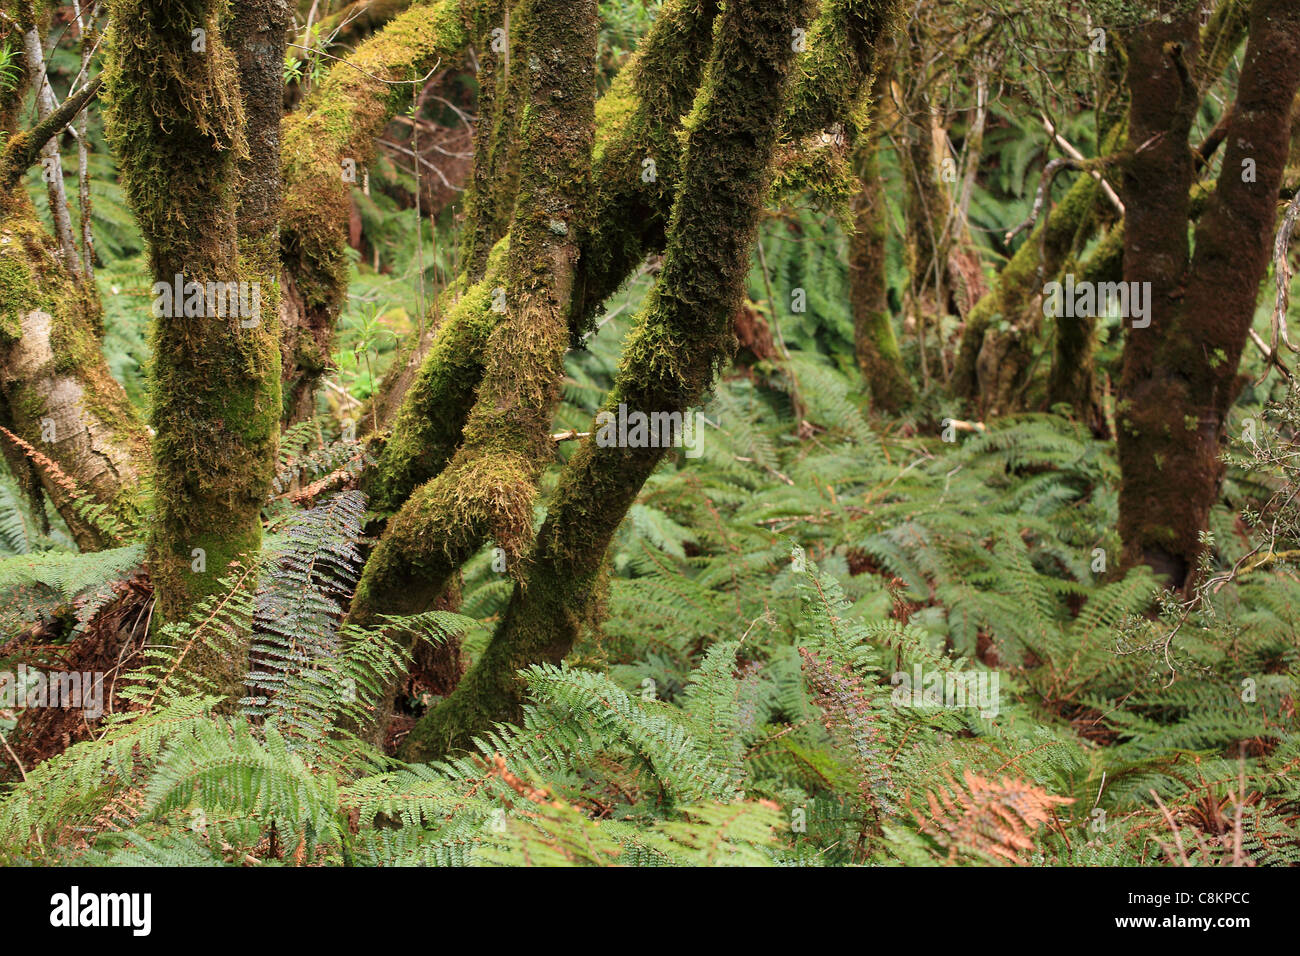 Eine typische alpine Buche Wald Szene, darunter viele Farne - Mount Cook, Neuseeland Stockfoto